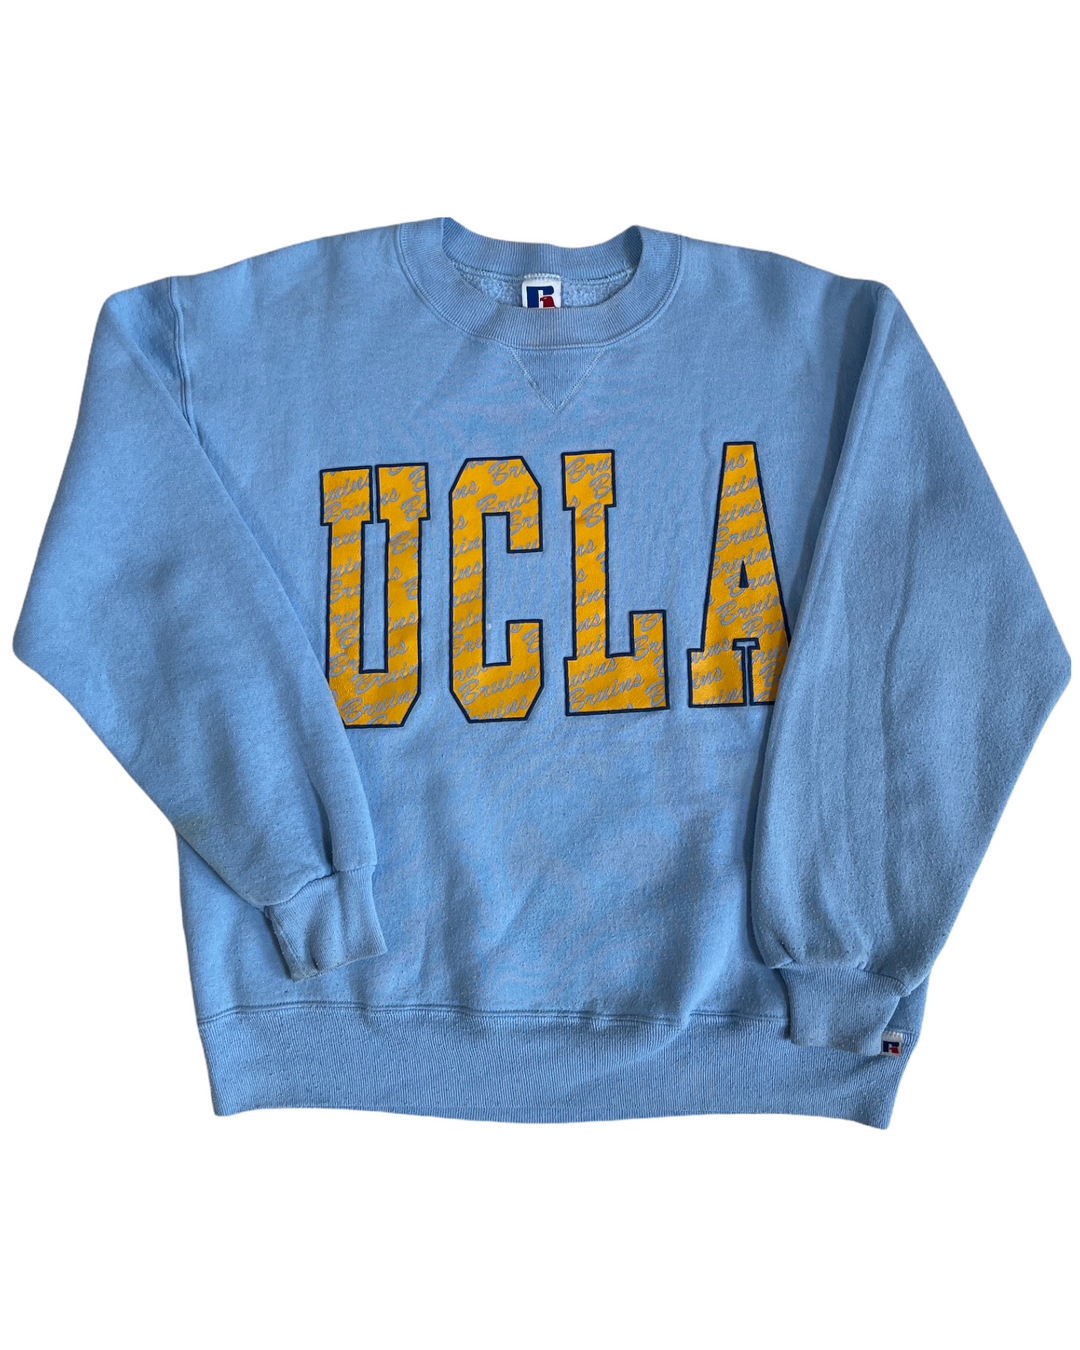 UCLA Vintage Sweatshirt